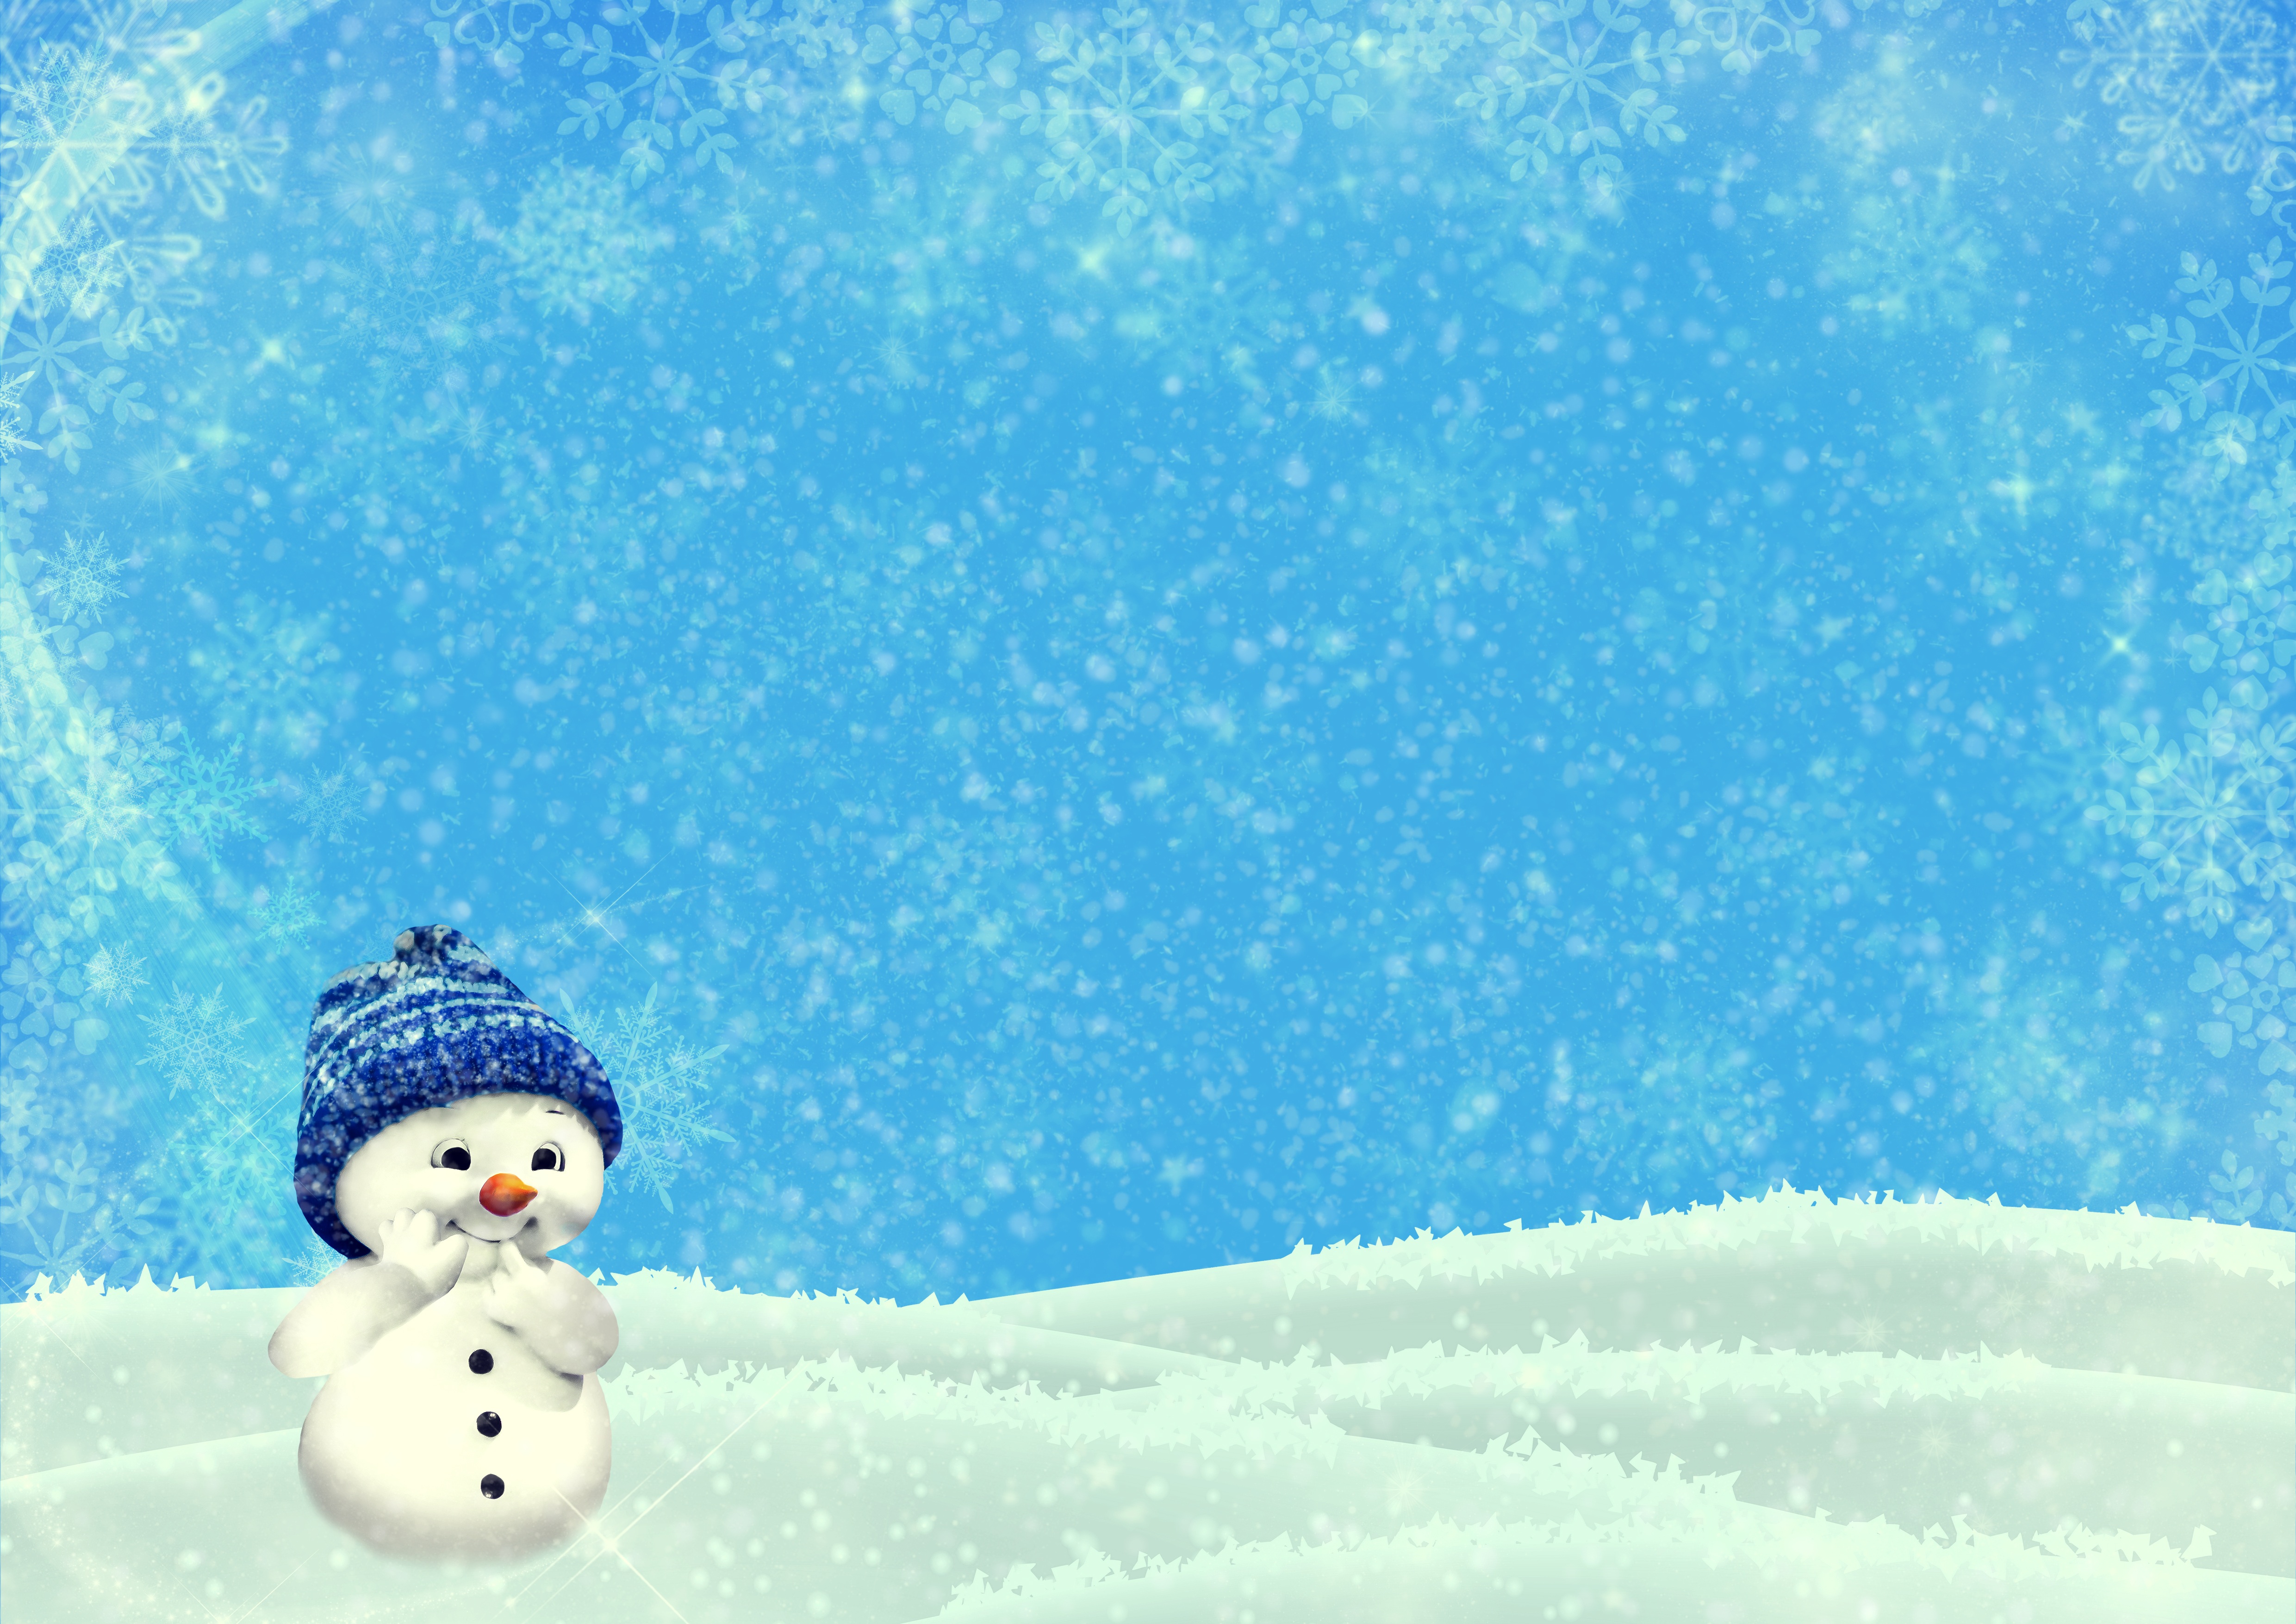 Snow Snowman 4961x3508